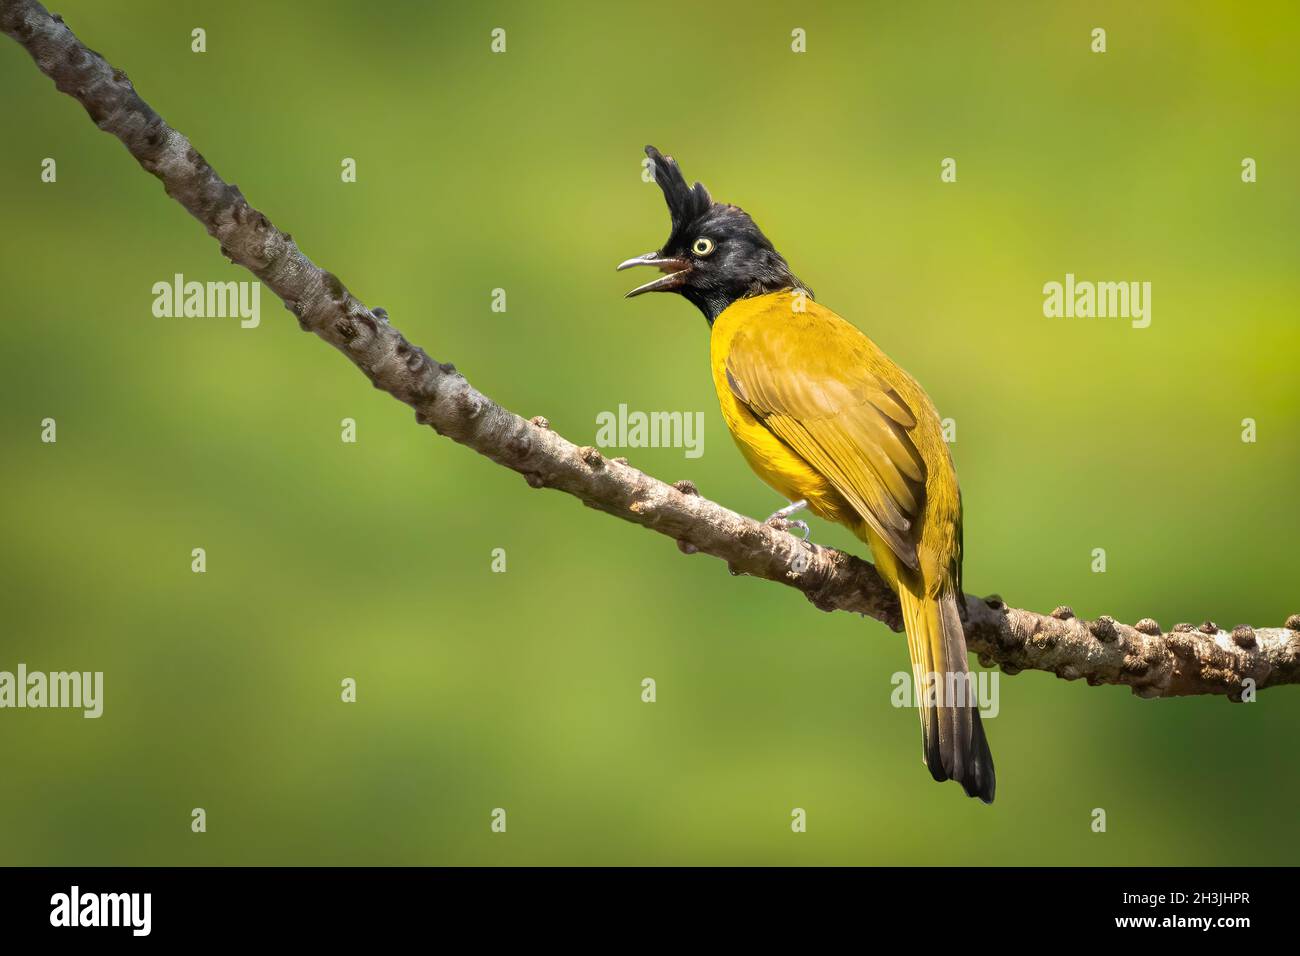 Image de Bulbul (Rubigula flaviventris) perché sur une branche sur fond naturel.Oiseau.Animaux. Banque D'Images